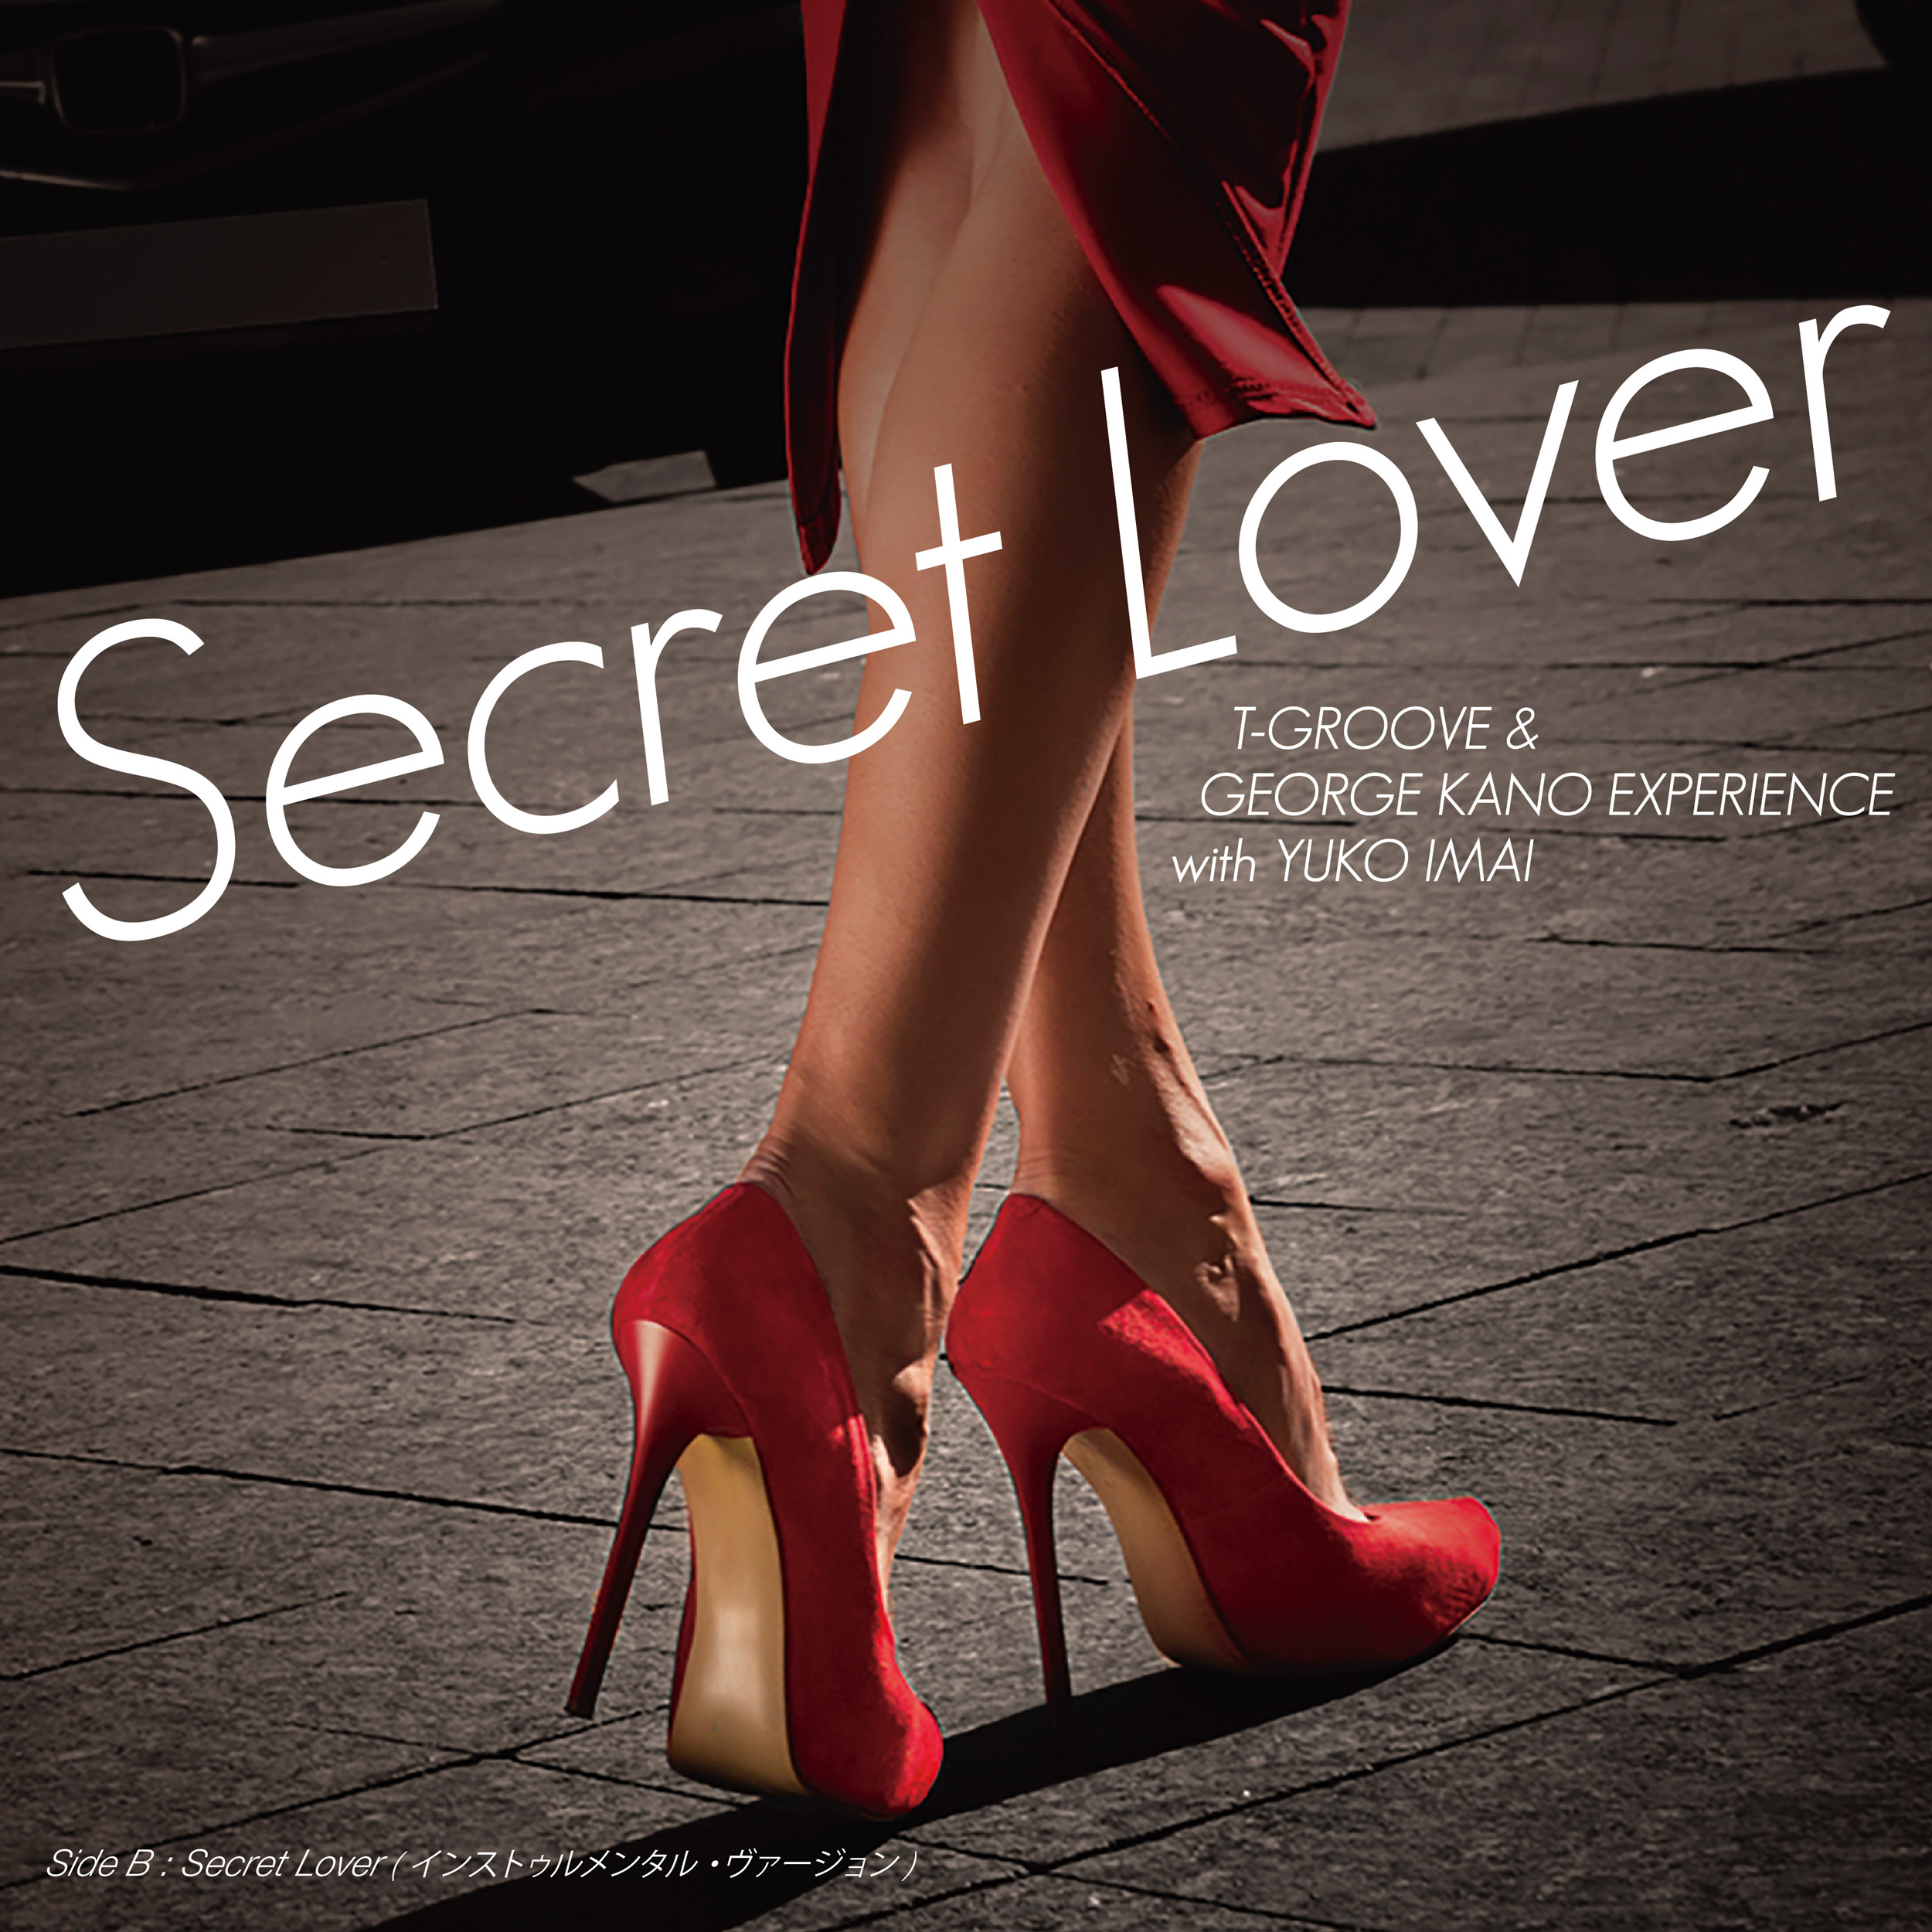 Secret lover (Vocal Version)